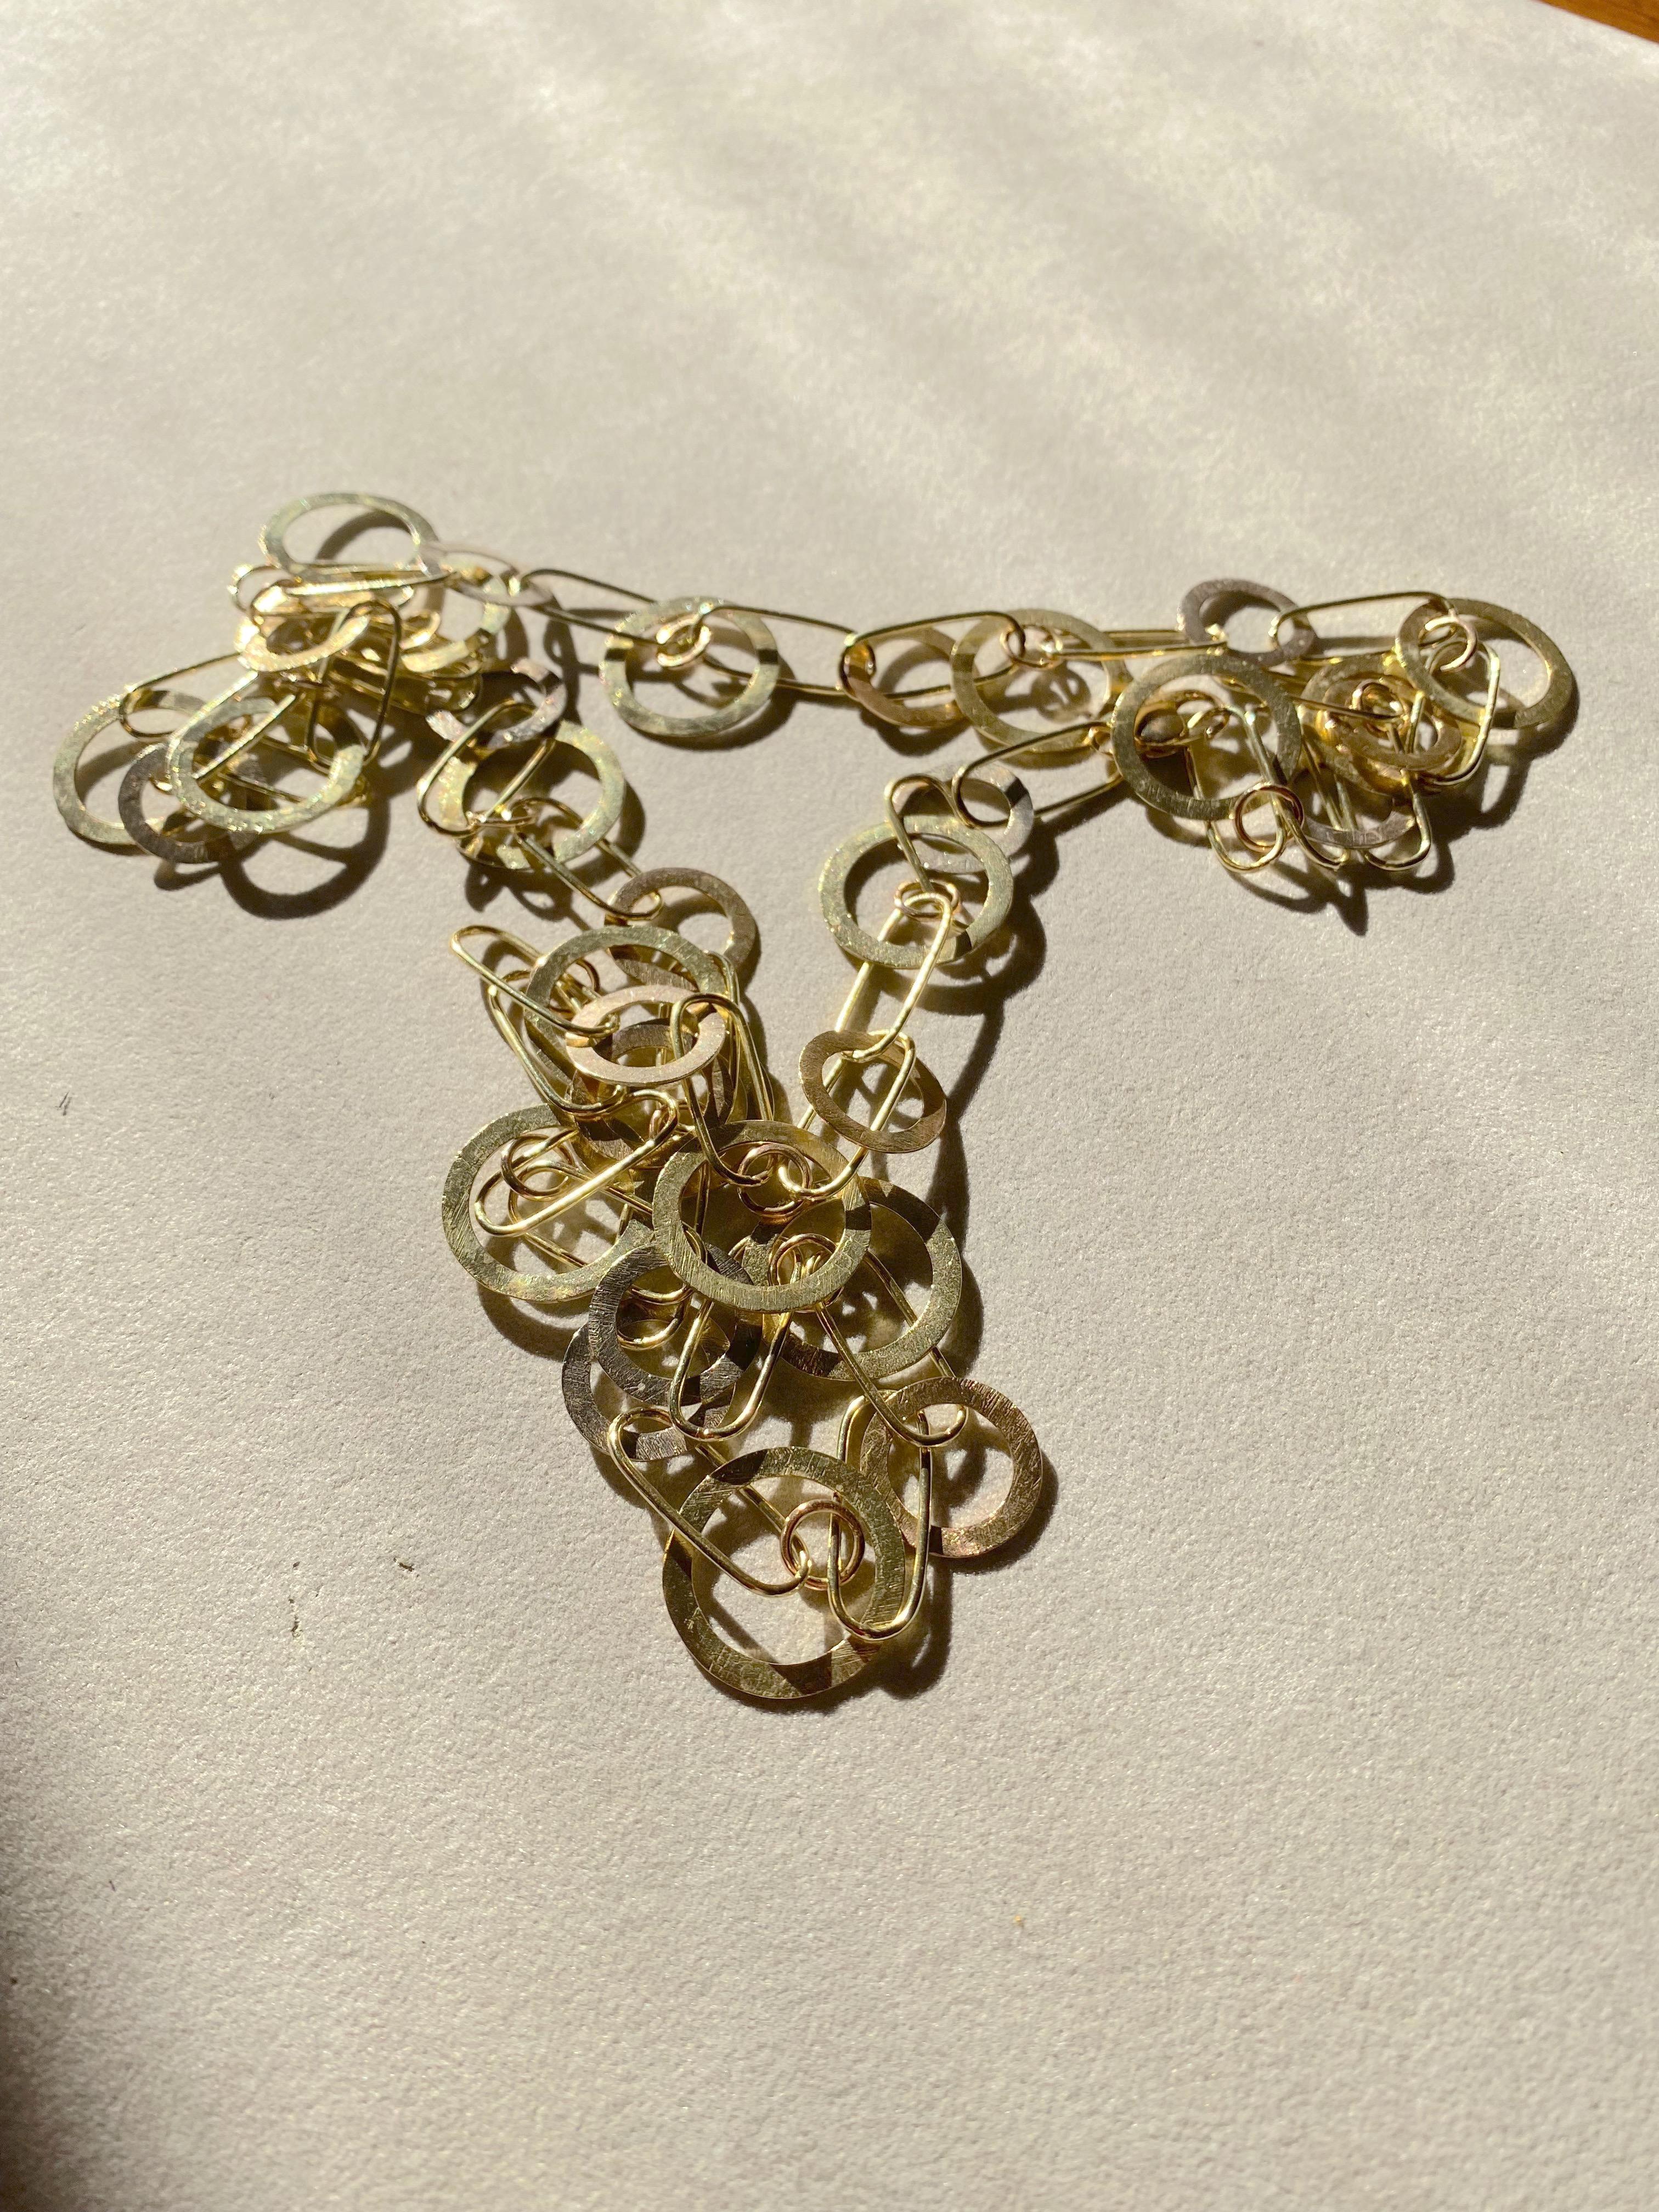 Rossella Ugolini Gold Chain Collection eine einzigartige und ganz besondere handgefertigte lange Kette Halskette aus 18 K Gelbgold.  Diese handgefertigte Halskette aus 18 Karat Gelbgold ist ein wahrhaft einzigartiges und futuristisches Schmuckstück.